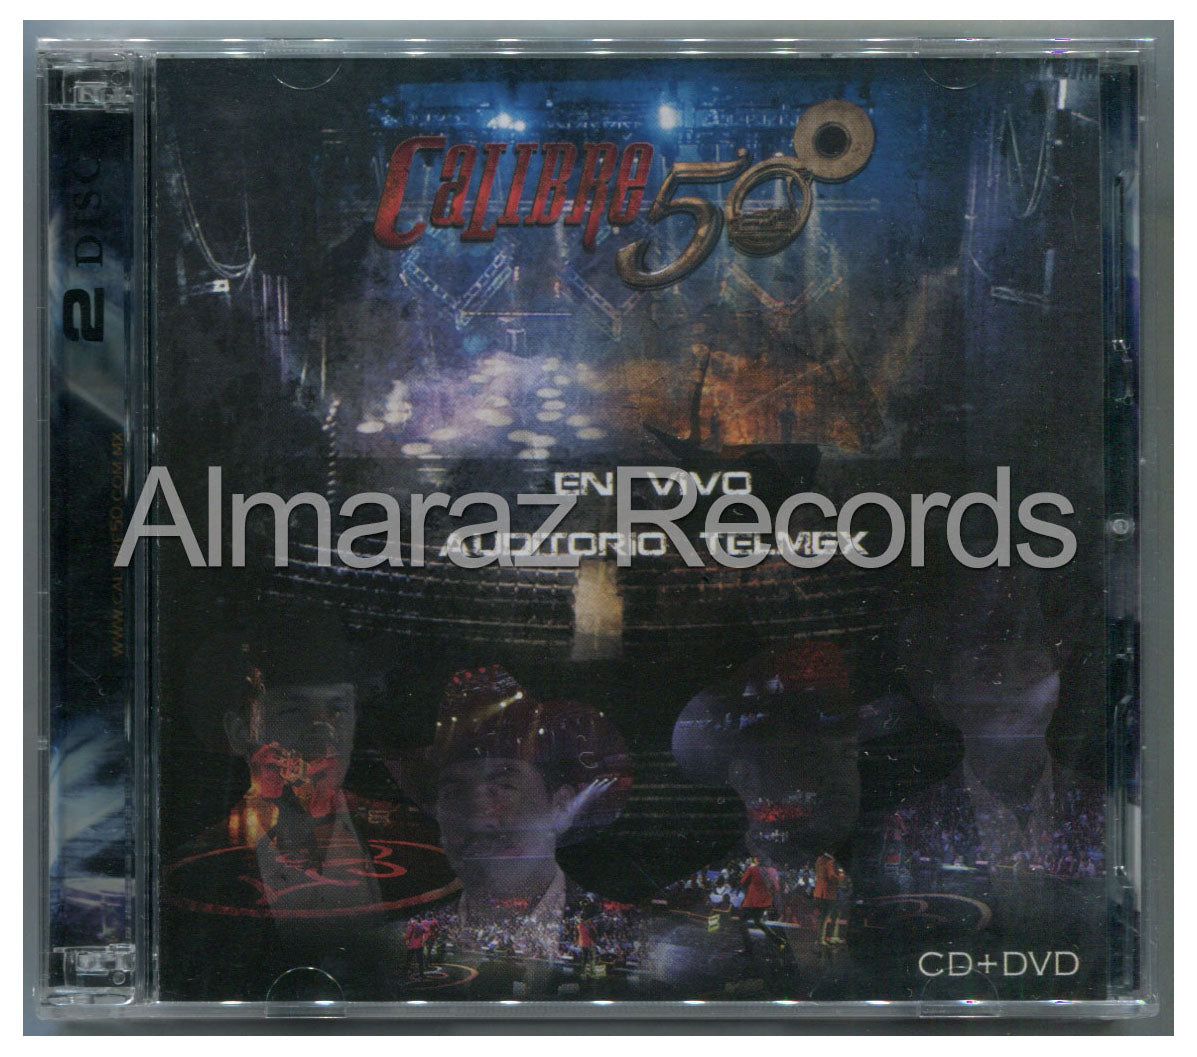 Calibre 50 En Vivo Auditorio Telmex CD+DVD